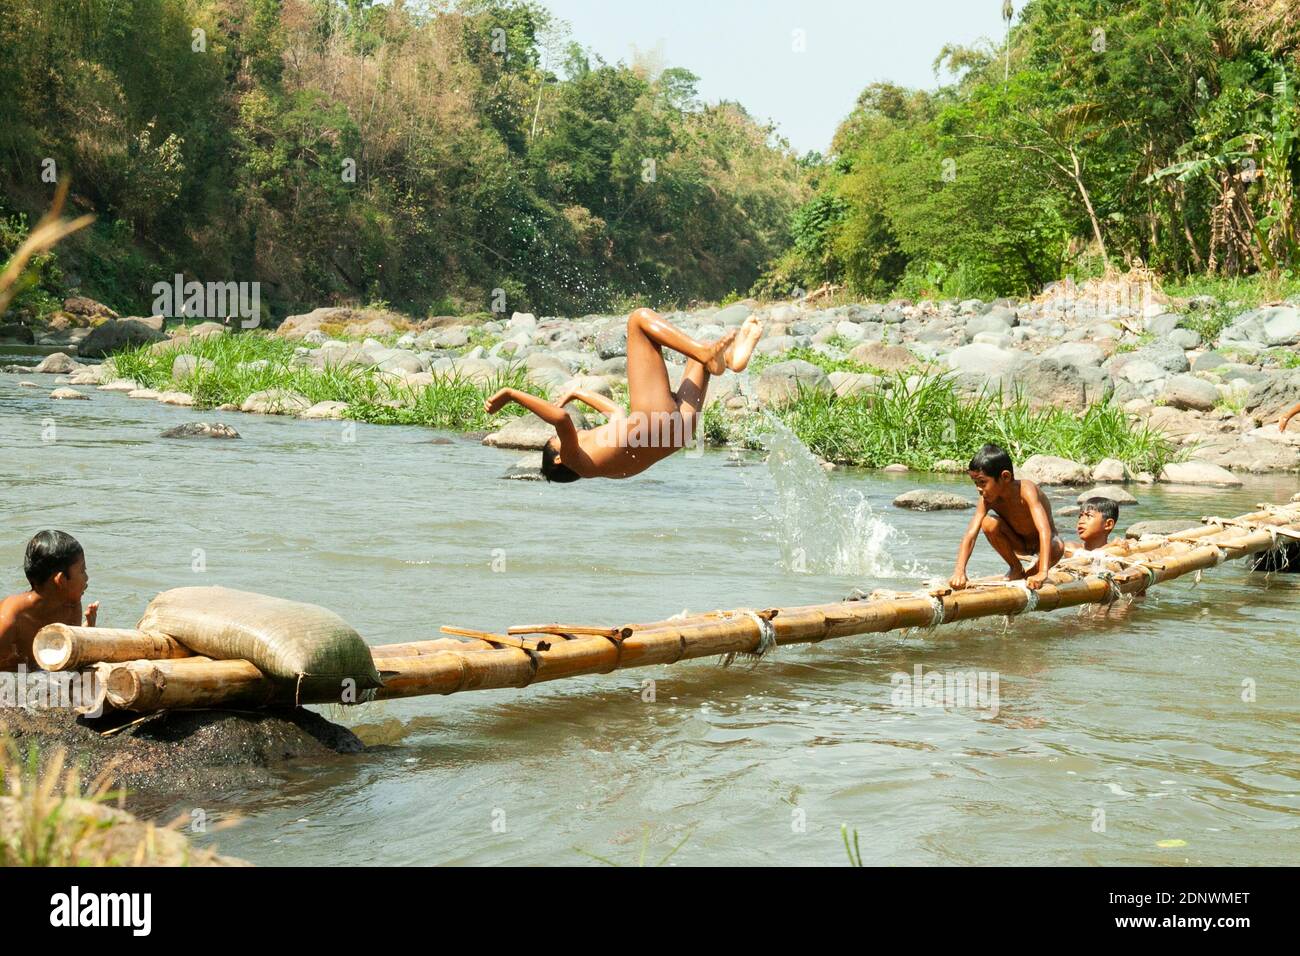 Bewohner des Dorfes Taman Krocok, Bondowoso, nutzen den Fluss zum Baden und Spielen. Stockfoto